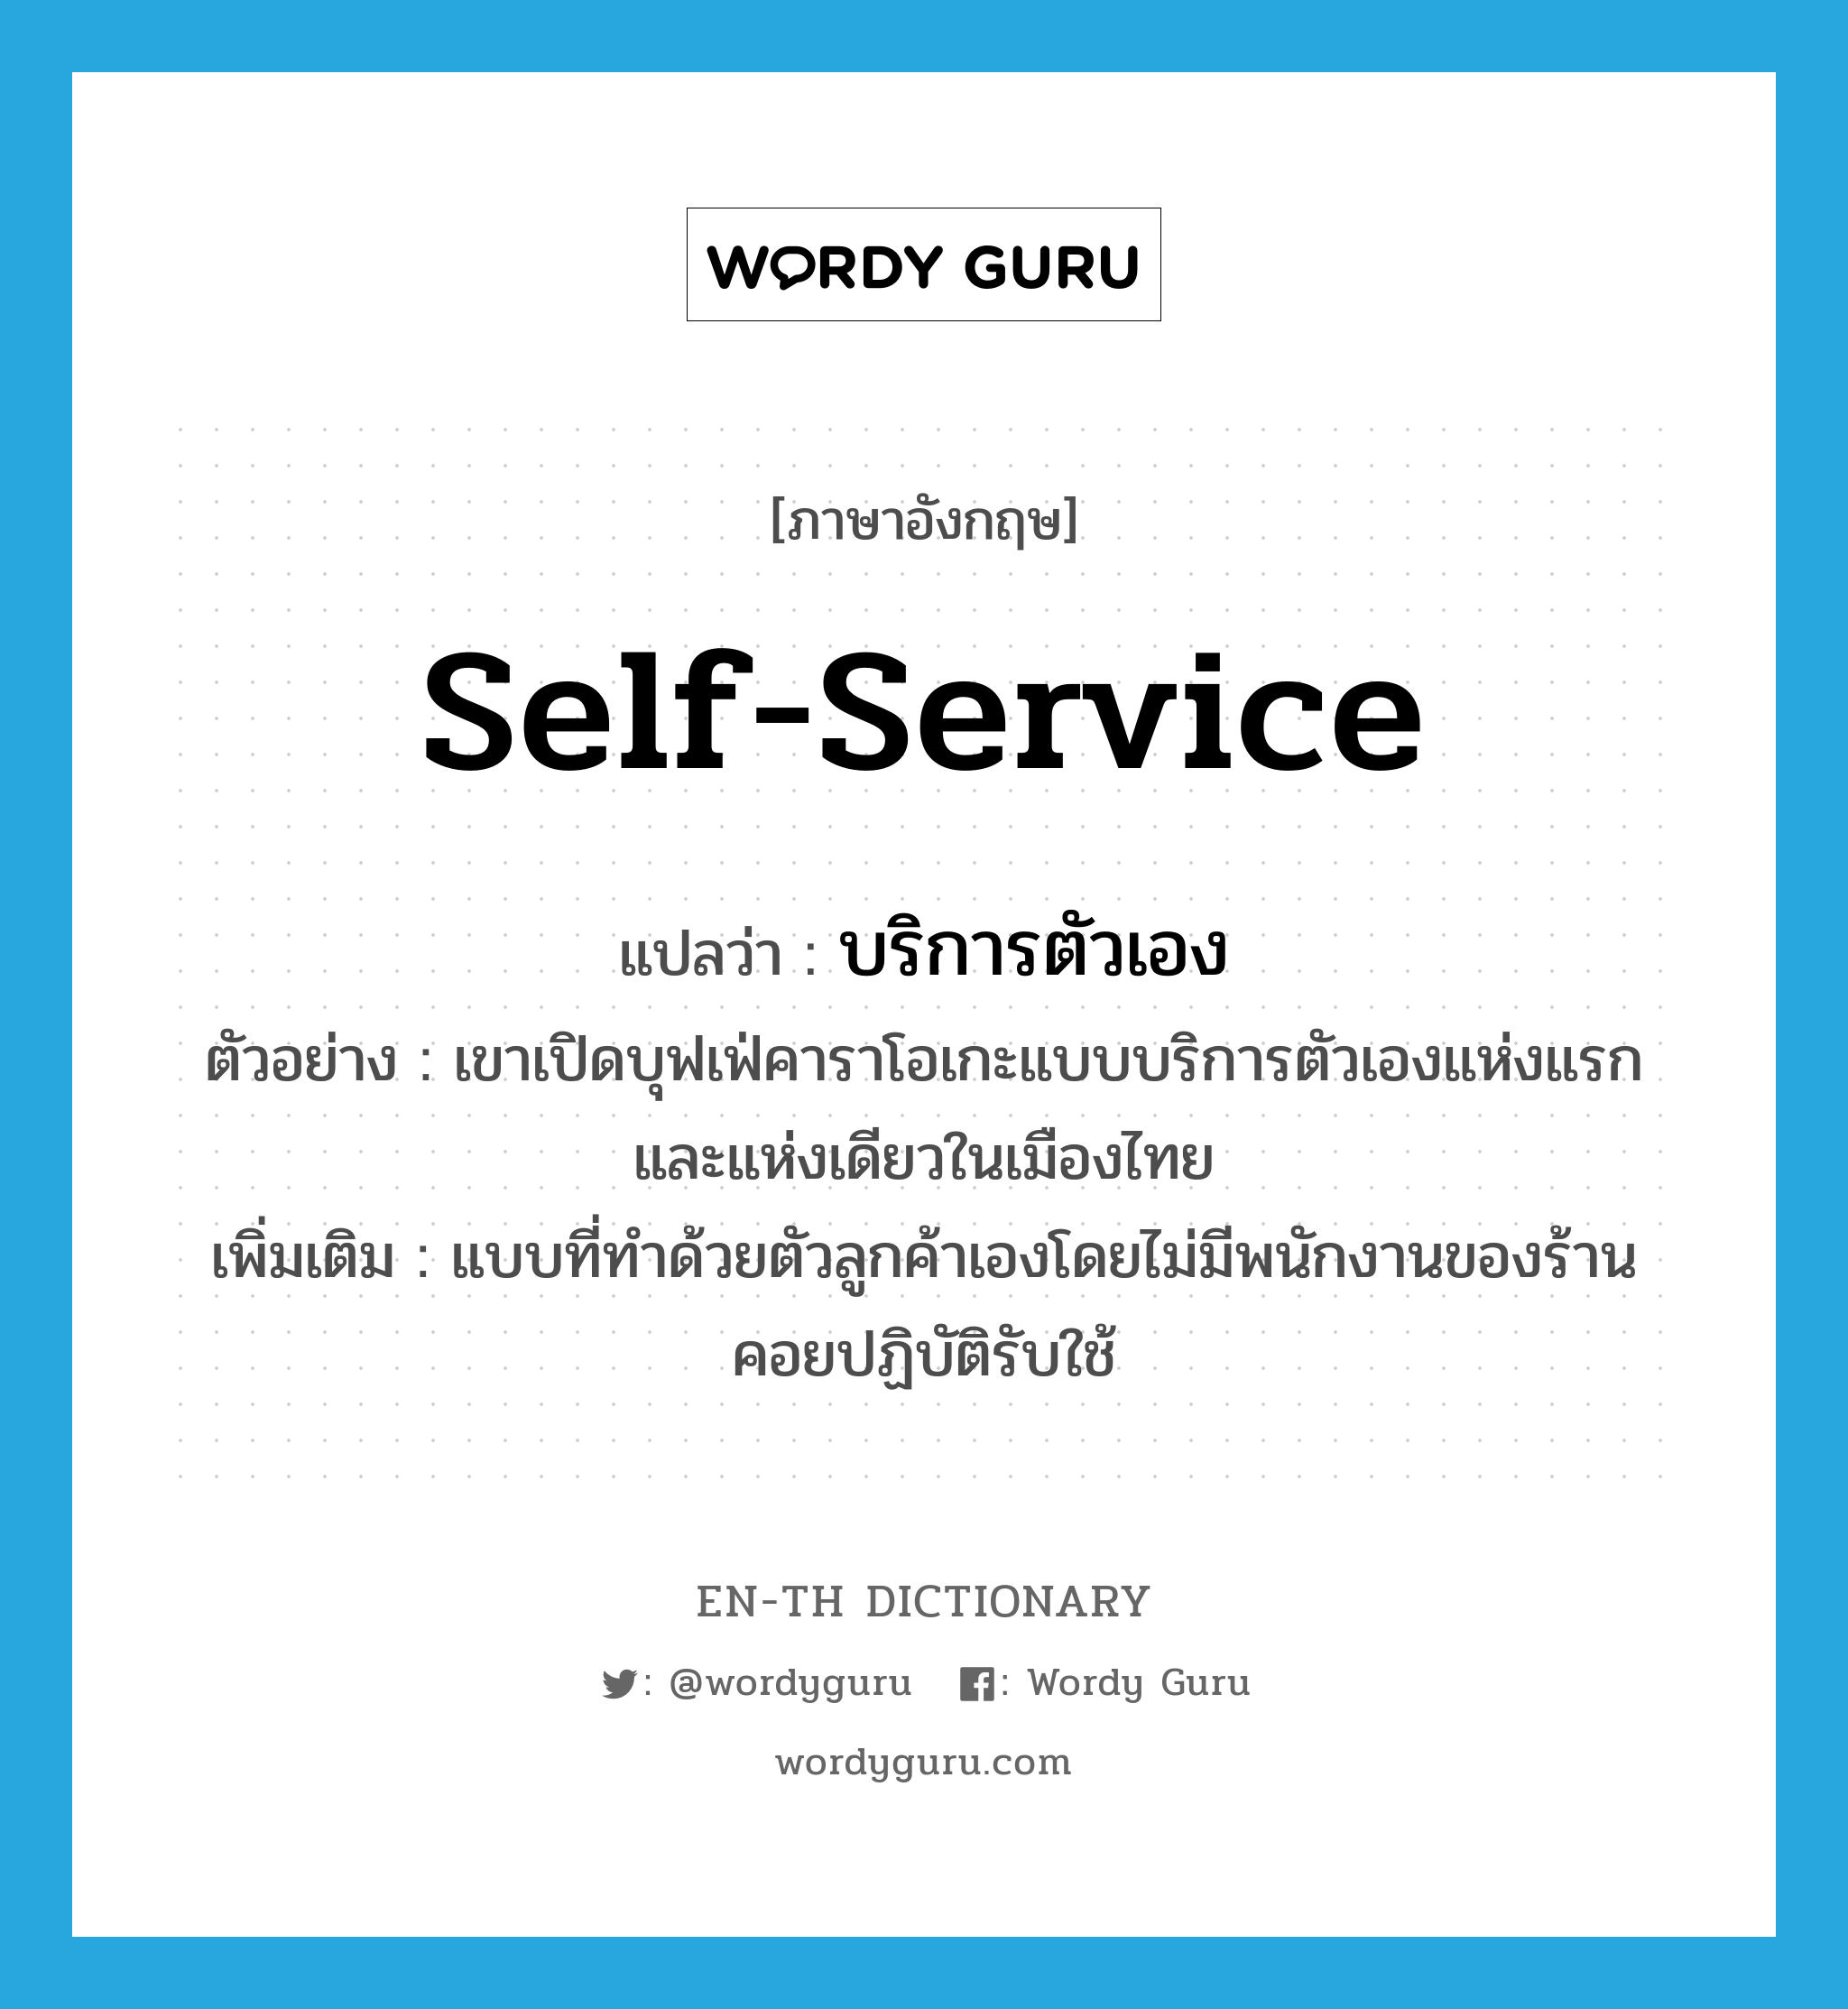 self-service แปลว่า?, คำศัพท์ภาษาอังกฤษ self-service แปลว่า บริการตัวเอง ประเภท ADJ ตัวอย่าง เขาเปิดบุฟเฟ่คาราโอเกะแบบบริการตัวเองแห่งแรกและแห่งเดียวในเมืองไทย เพิ่มเติม แบบที่ทำด้วยตัวลูกค้าเองโดยไม่มีพนักงานของร้านคอยปฏิบัติรับใช้ หมวด ADJ